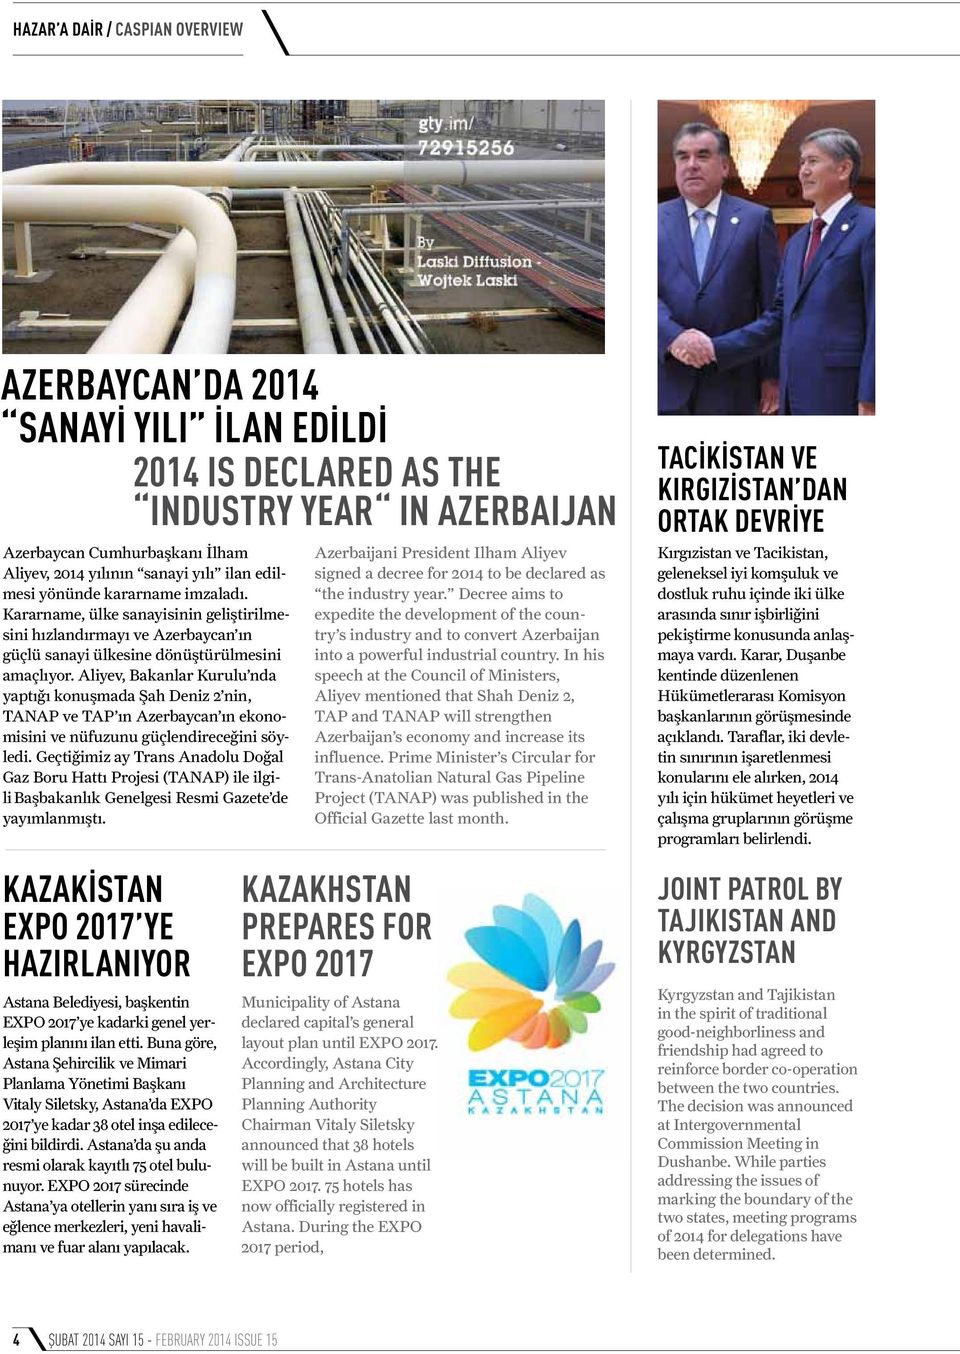 Aliyev, Bakanlar Kurulu nda yaptığı konuşmada Şah Deniz 2 nin, TANAP ve TAP ın Azerbaycan ın ekonomisini ve nüfuzunu güçlendireceğini söyledi.